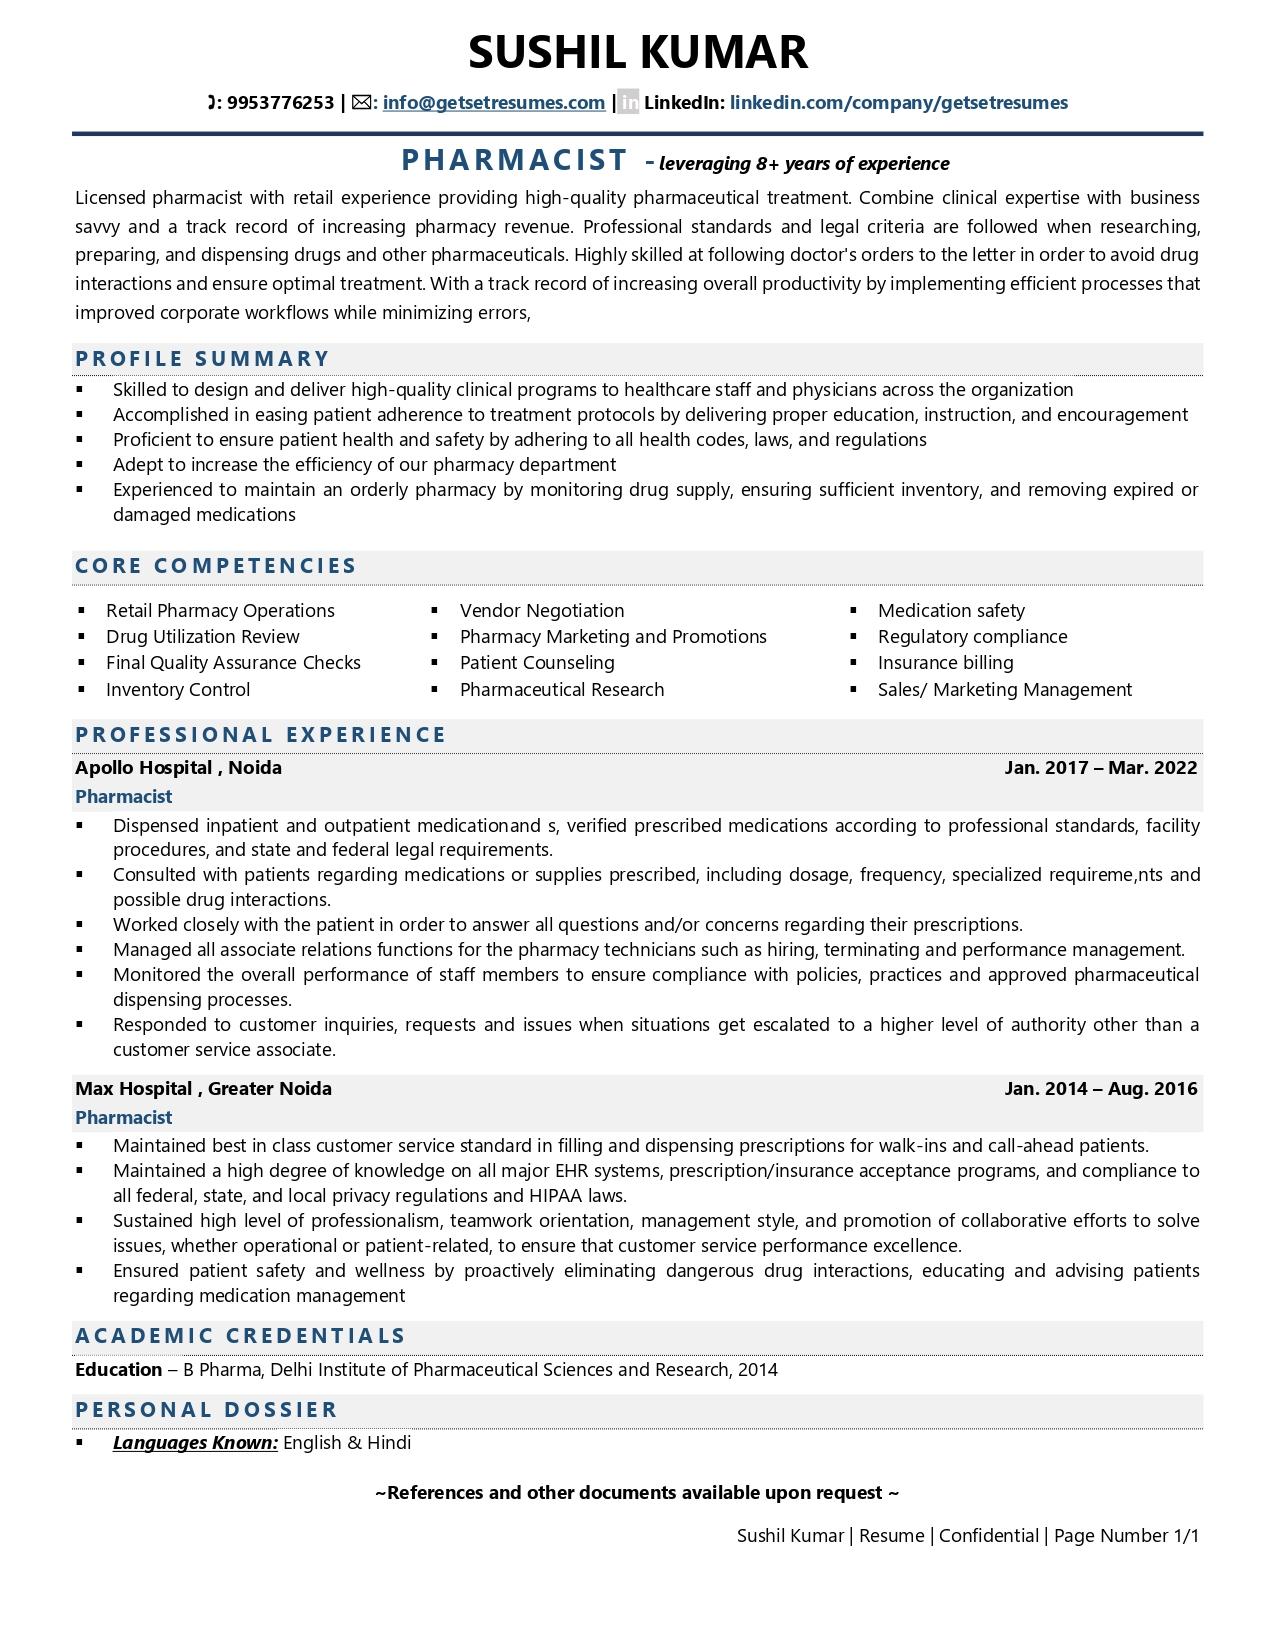 Resume Format For Pharmacist Circuitodelasuerte - Riset